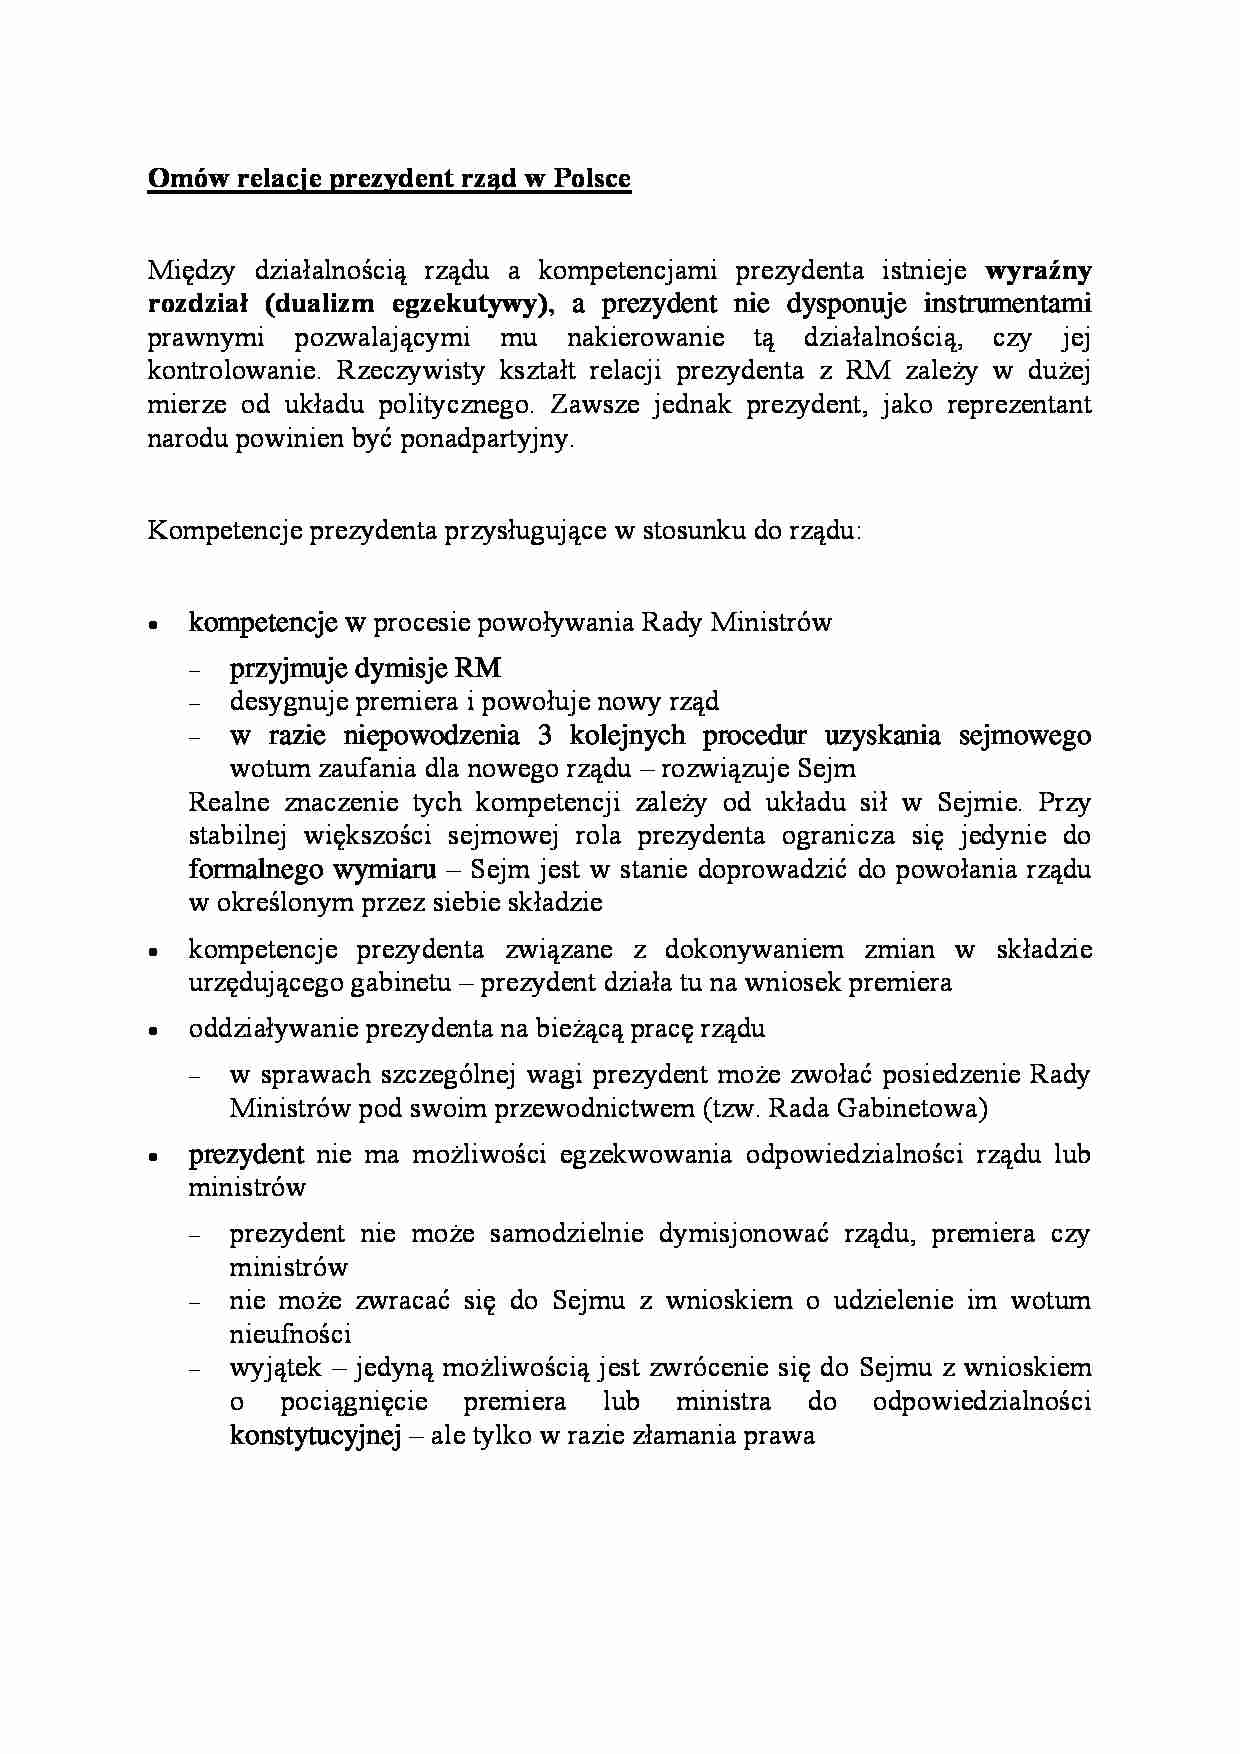 Omów relacje prezydent rząd w Polsce - strona 1